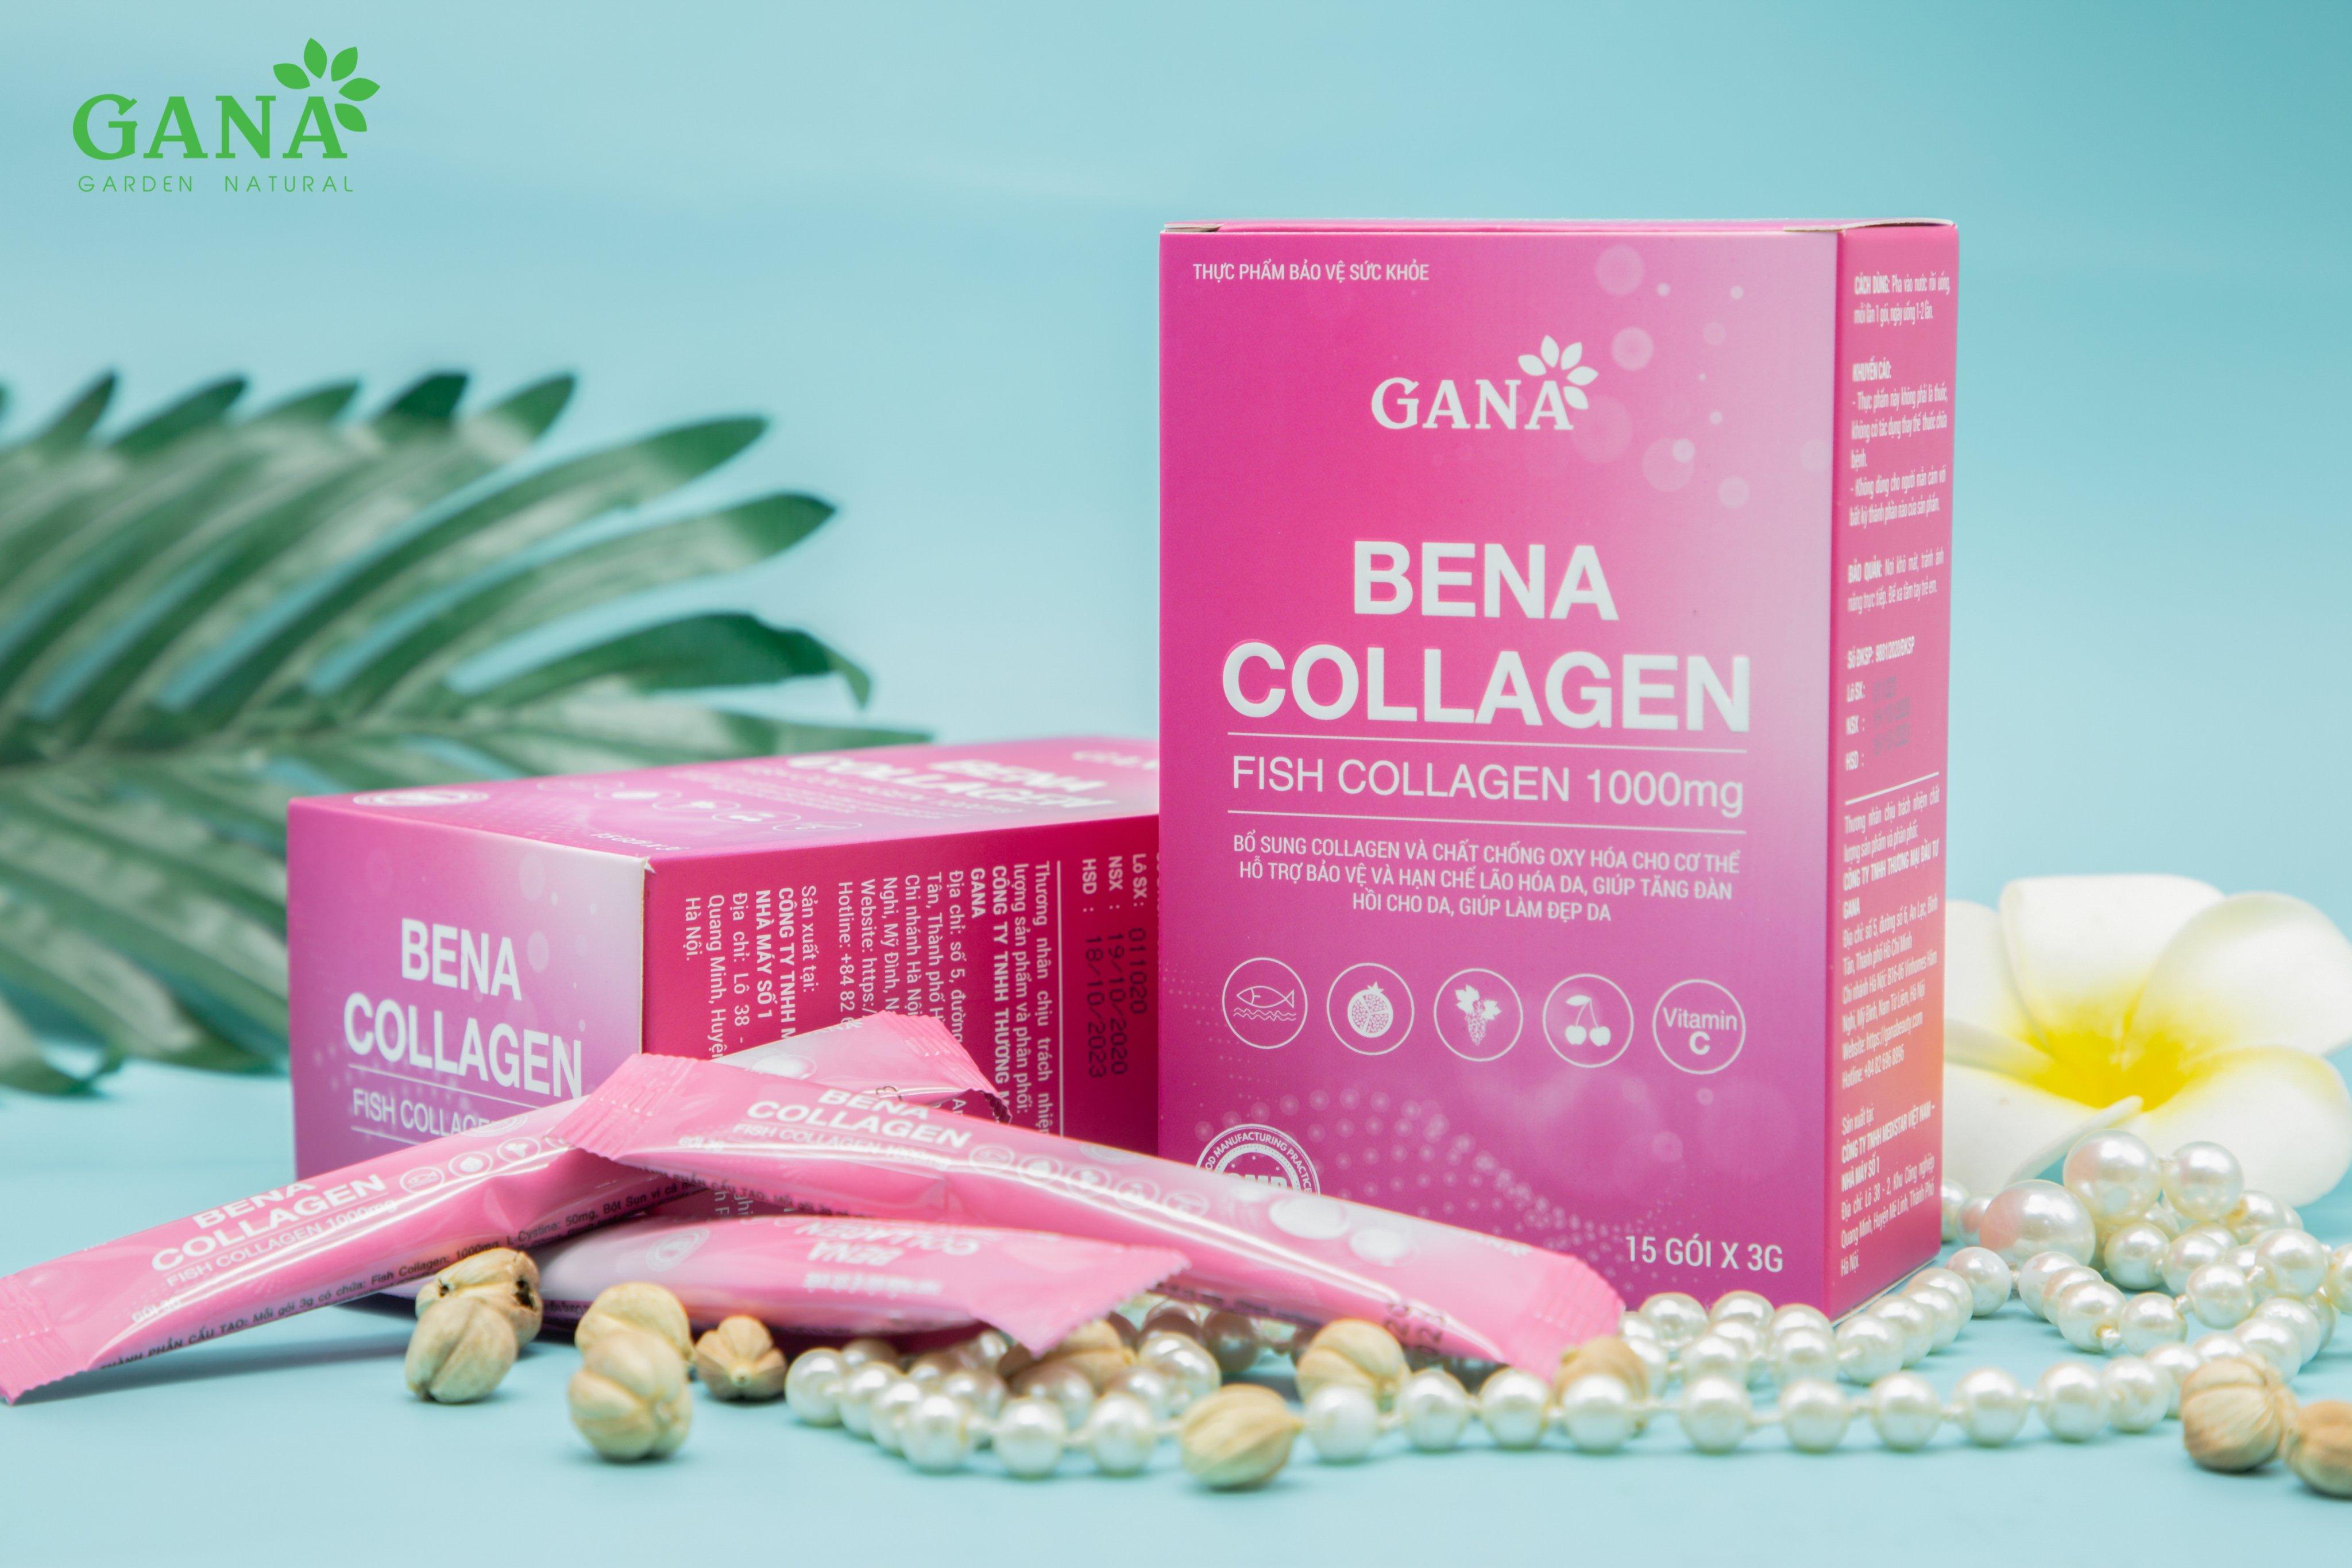 Ai nên sử dụng Bena Collagen?
